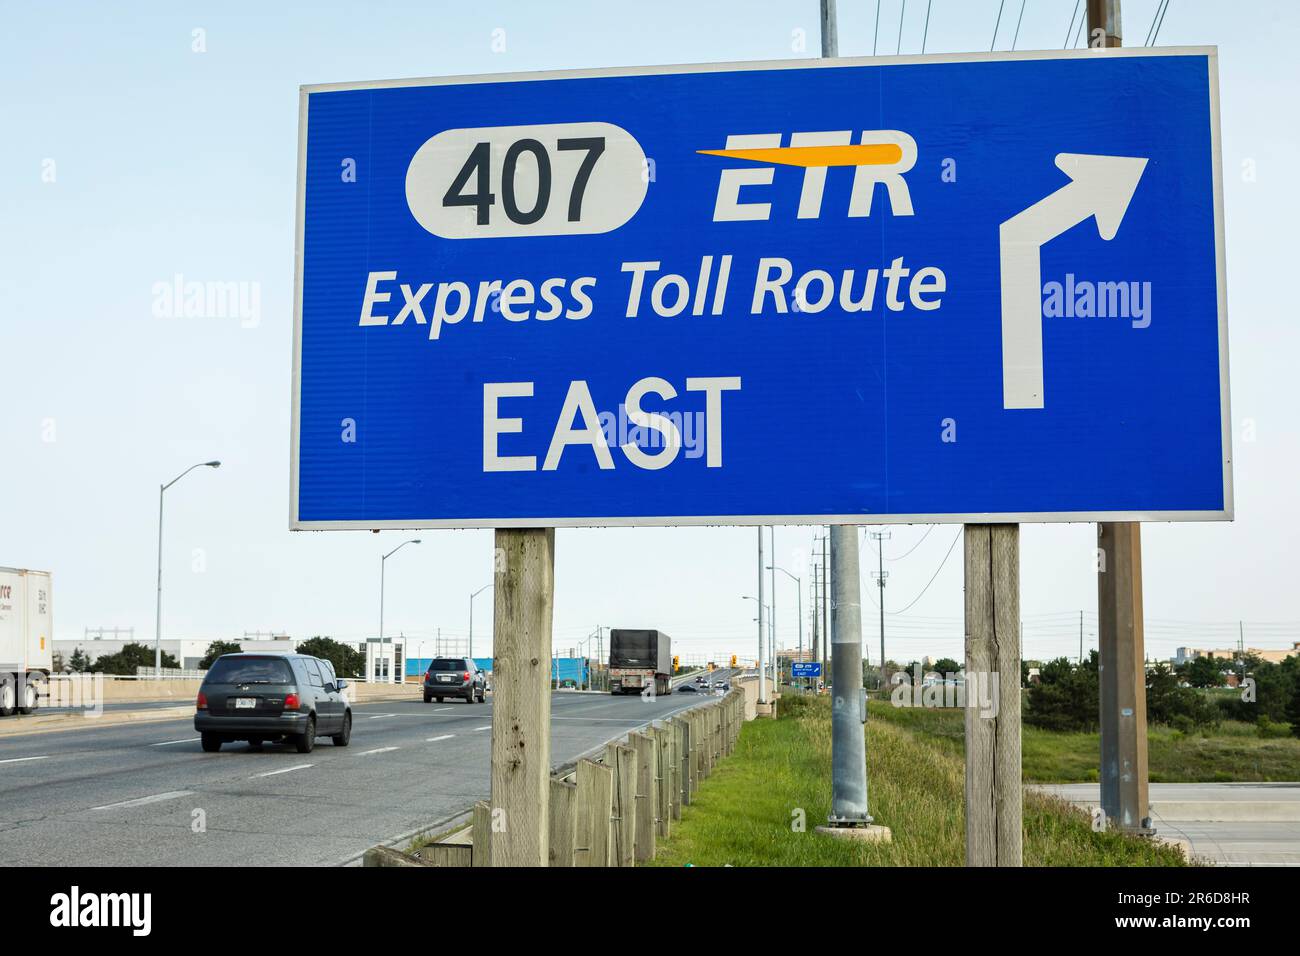 407 ETR Express toll Route East Beschilderung. Stockfoto